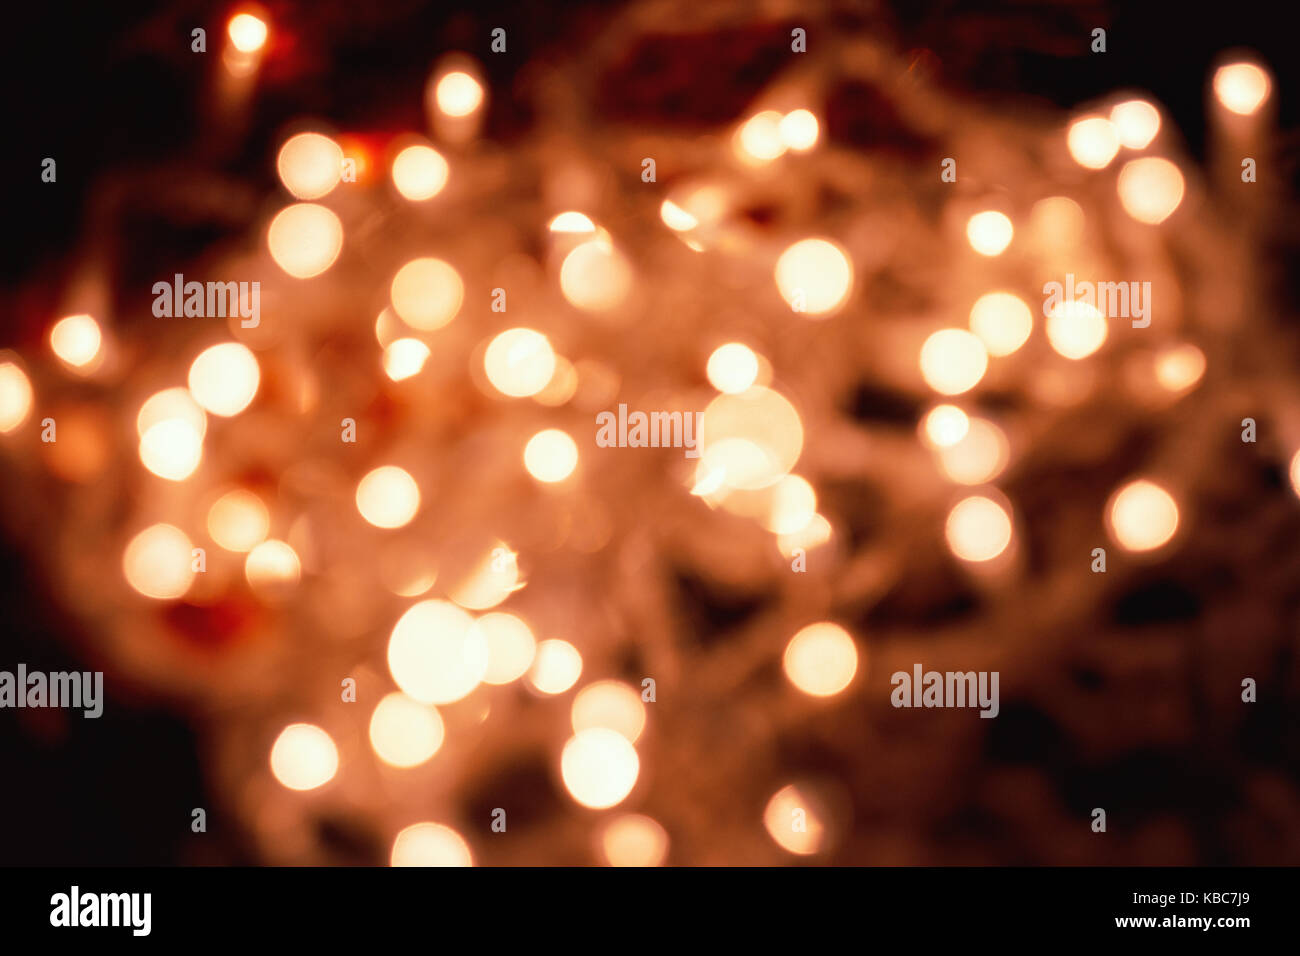 Resumen cerca de desenfoque circular naranja pálido luces navideñas tomadas con lentes vintage de helios 44-2 durante la noche Foto de stock